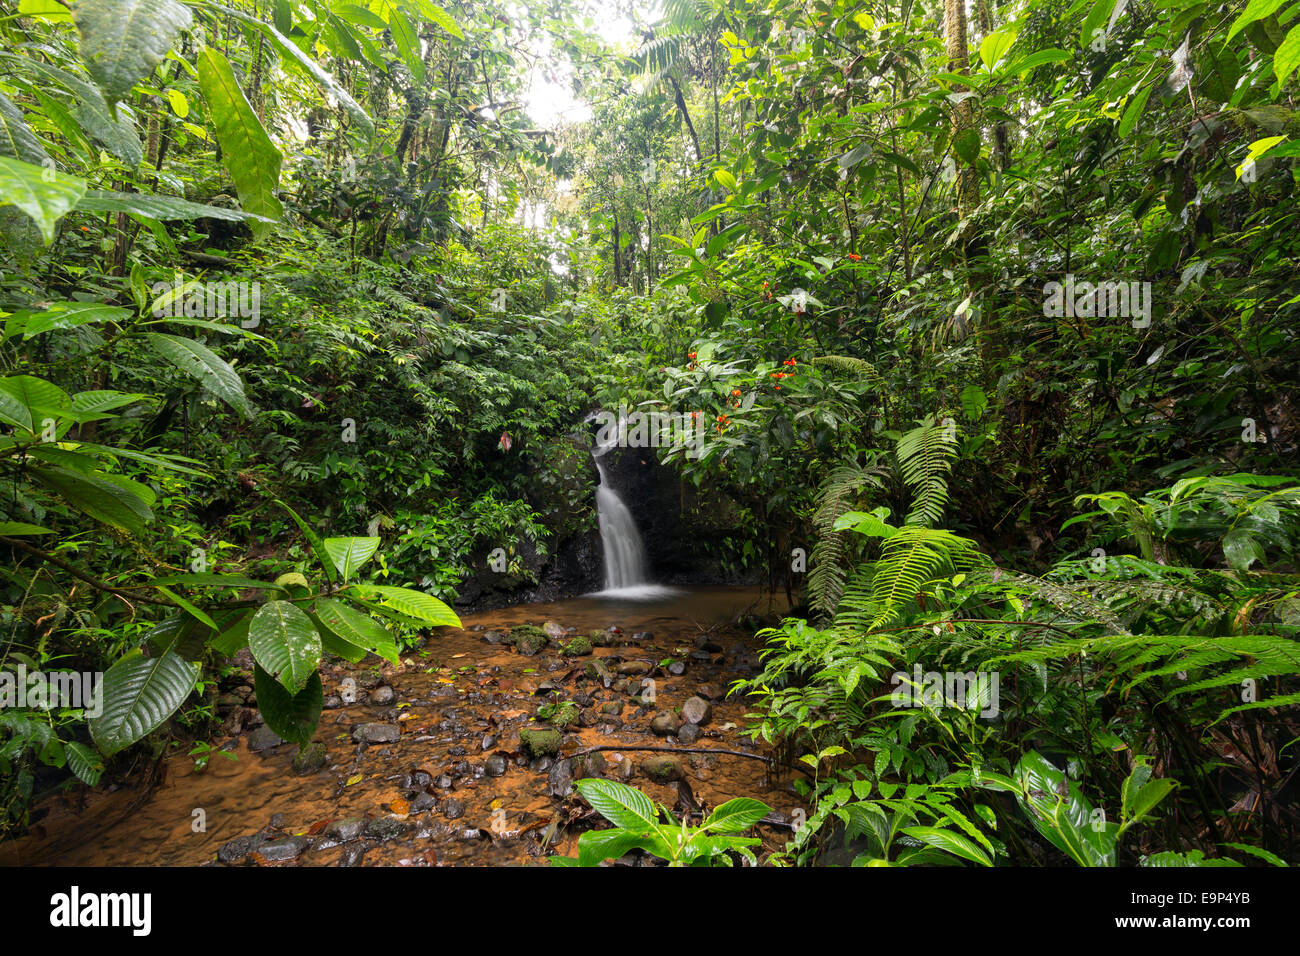 Regenwald-Wasserfall in einem feuchten Schlucht in der Nähe von Nationalpark Sumaco, Ecuador Stockfoto